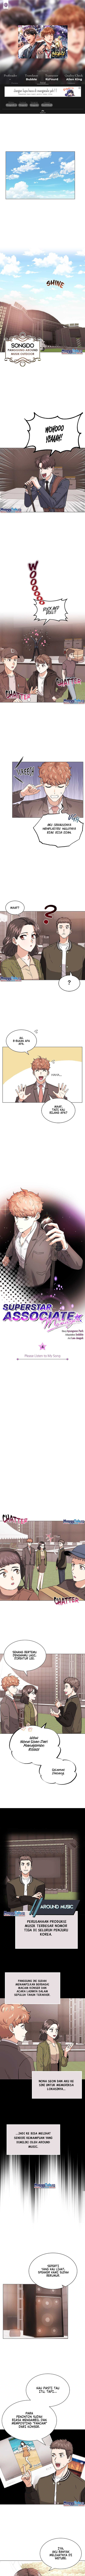 Superstar Associate Manager Chapter 04